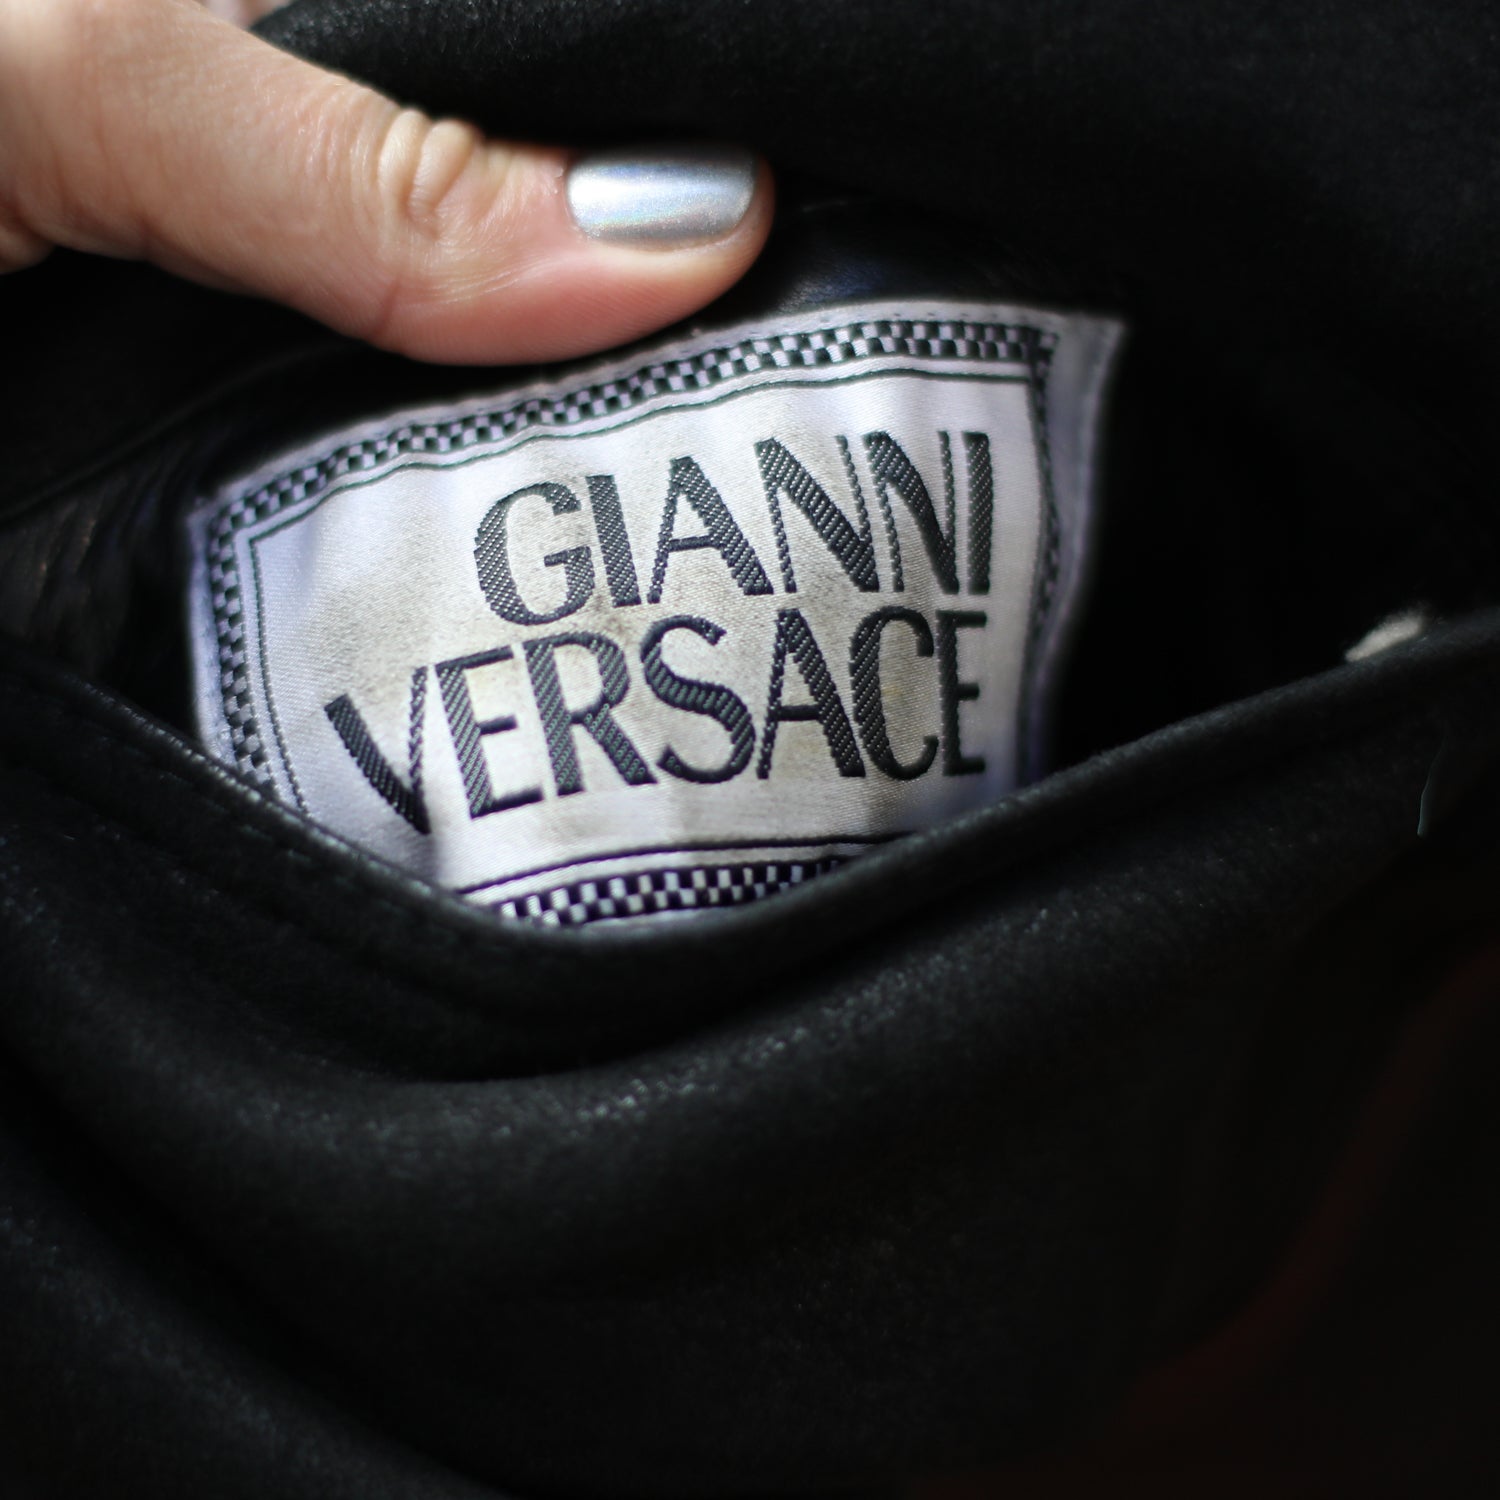 Gianni Versace 90s Unisex Sheepskin Coat